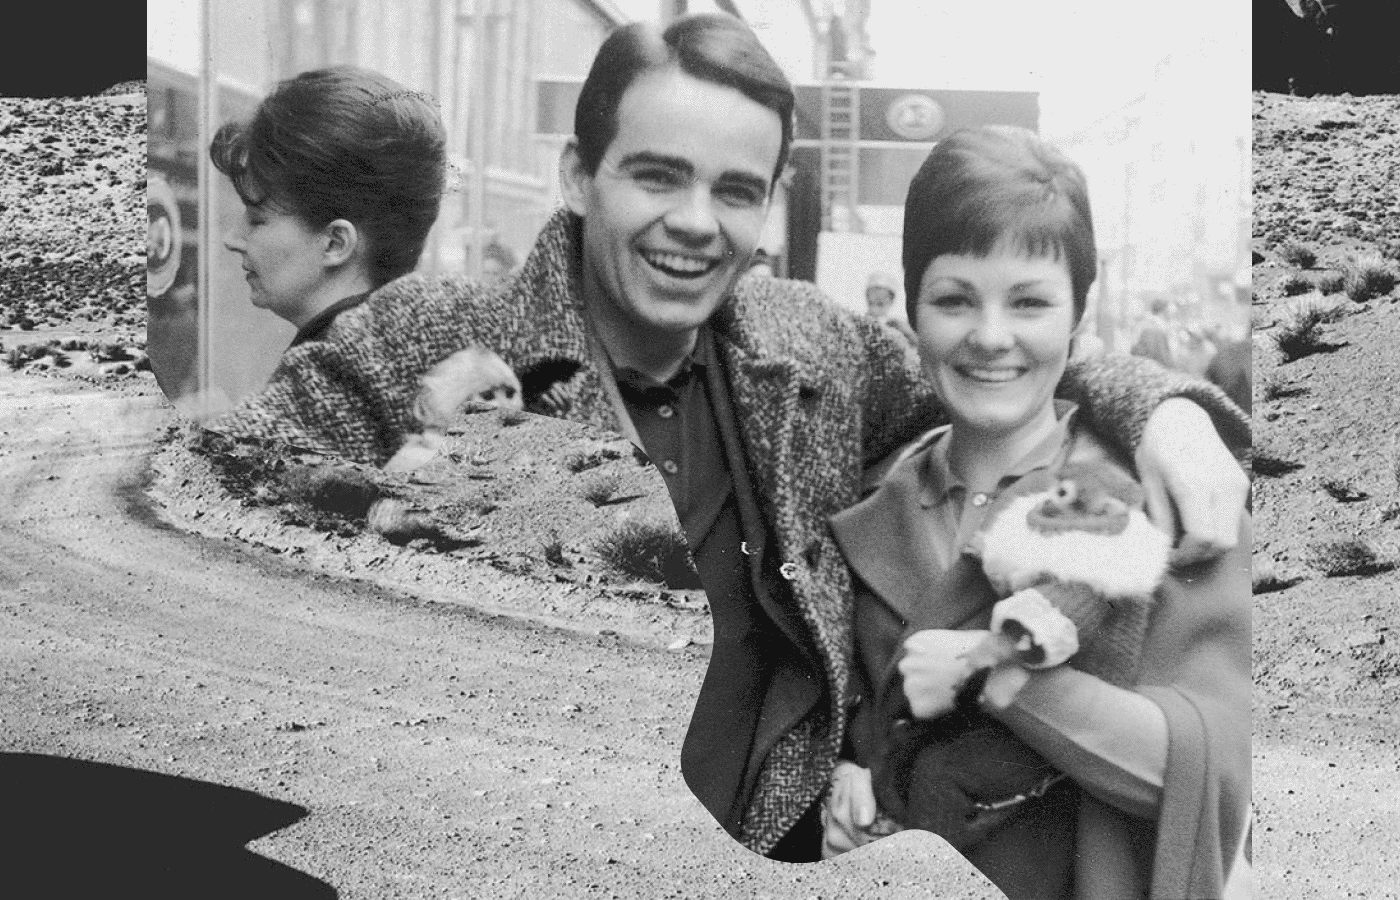 Кормак Маккарти с будущей женой Анни Делайл, 1966. Источник: knoxnews.com. Коллаж: Букмейт